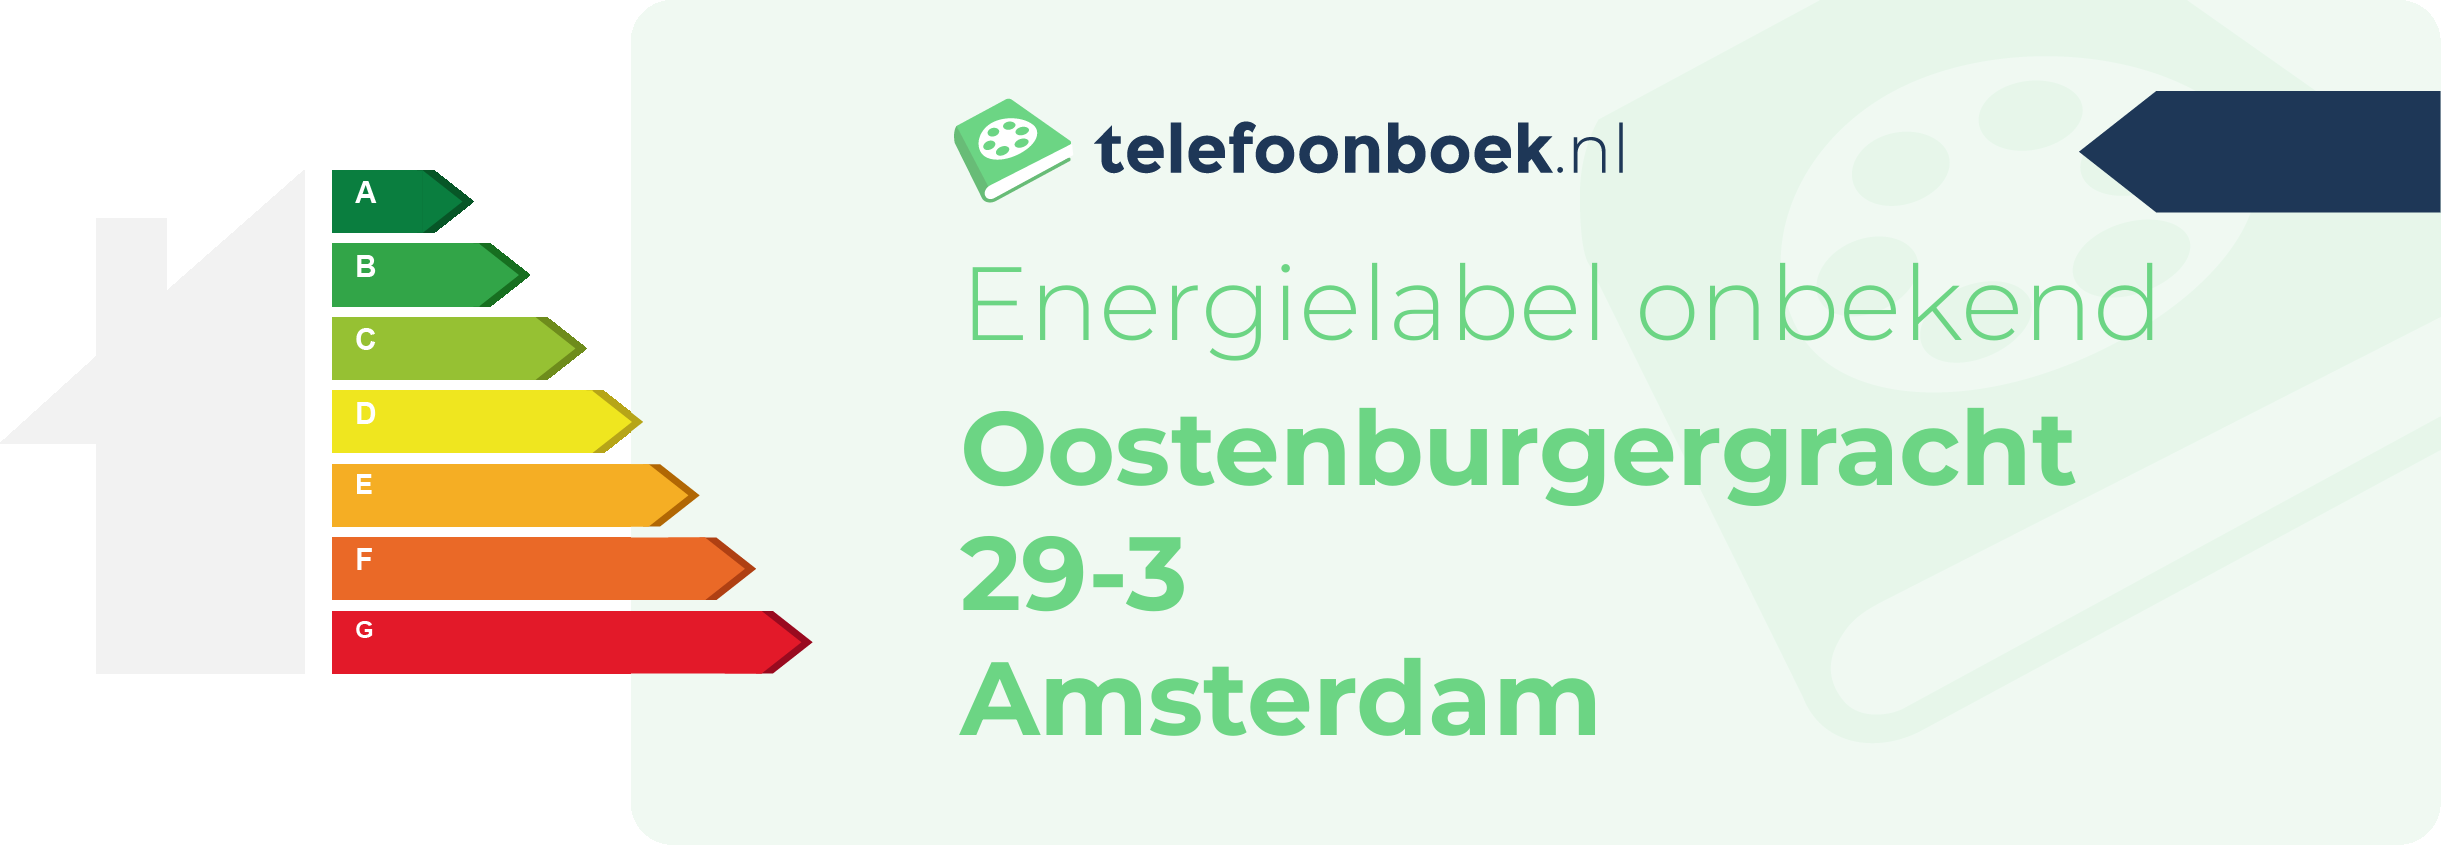 Energielabel Oostenburgergracht 29-3 Amsterdam